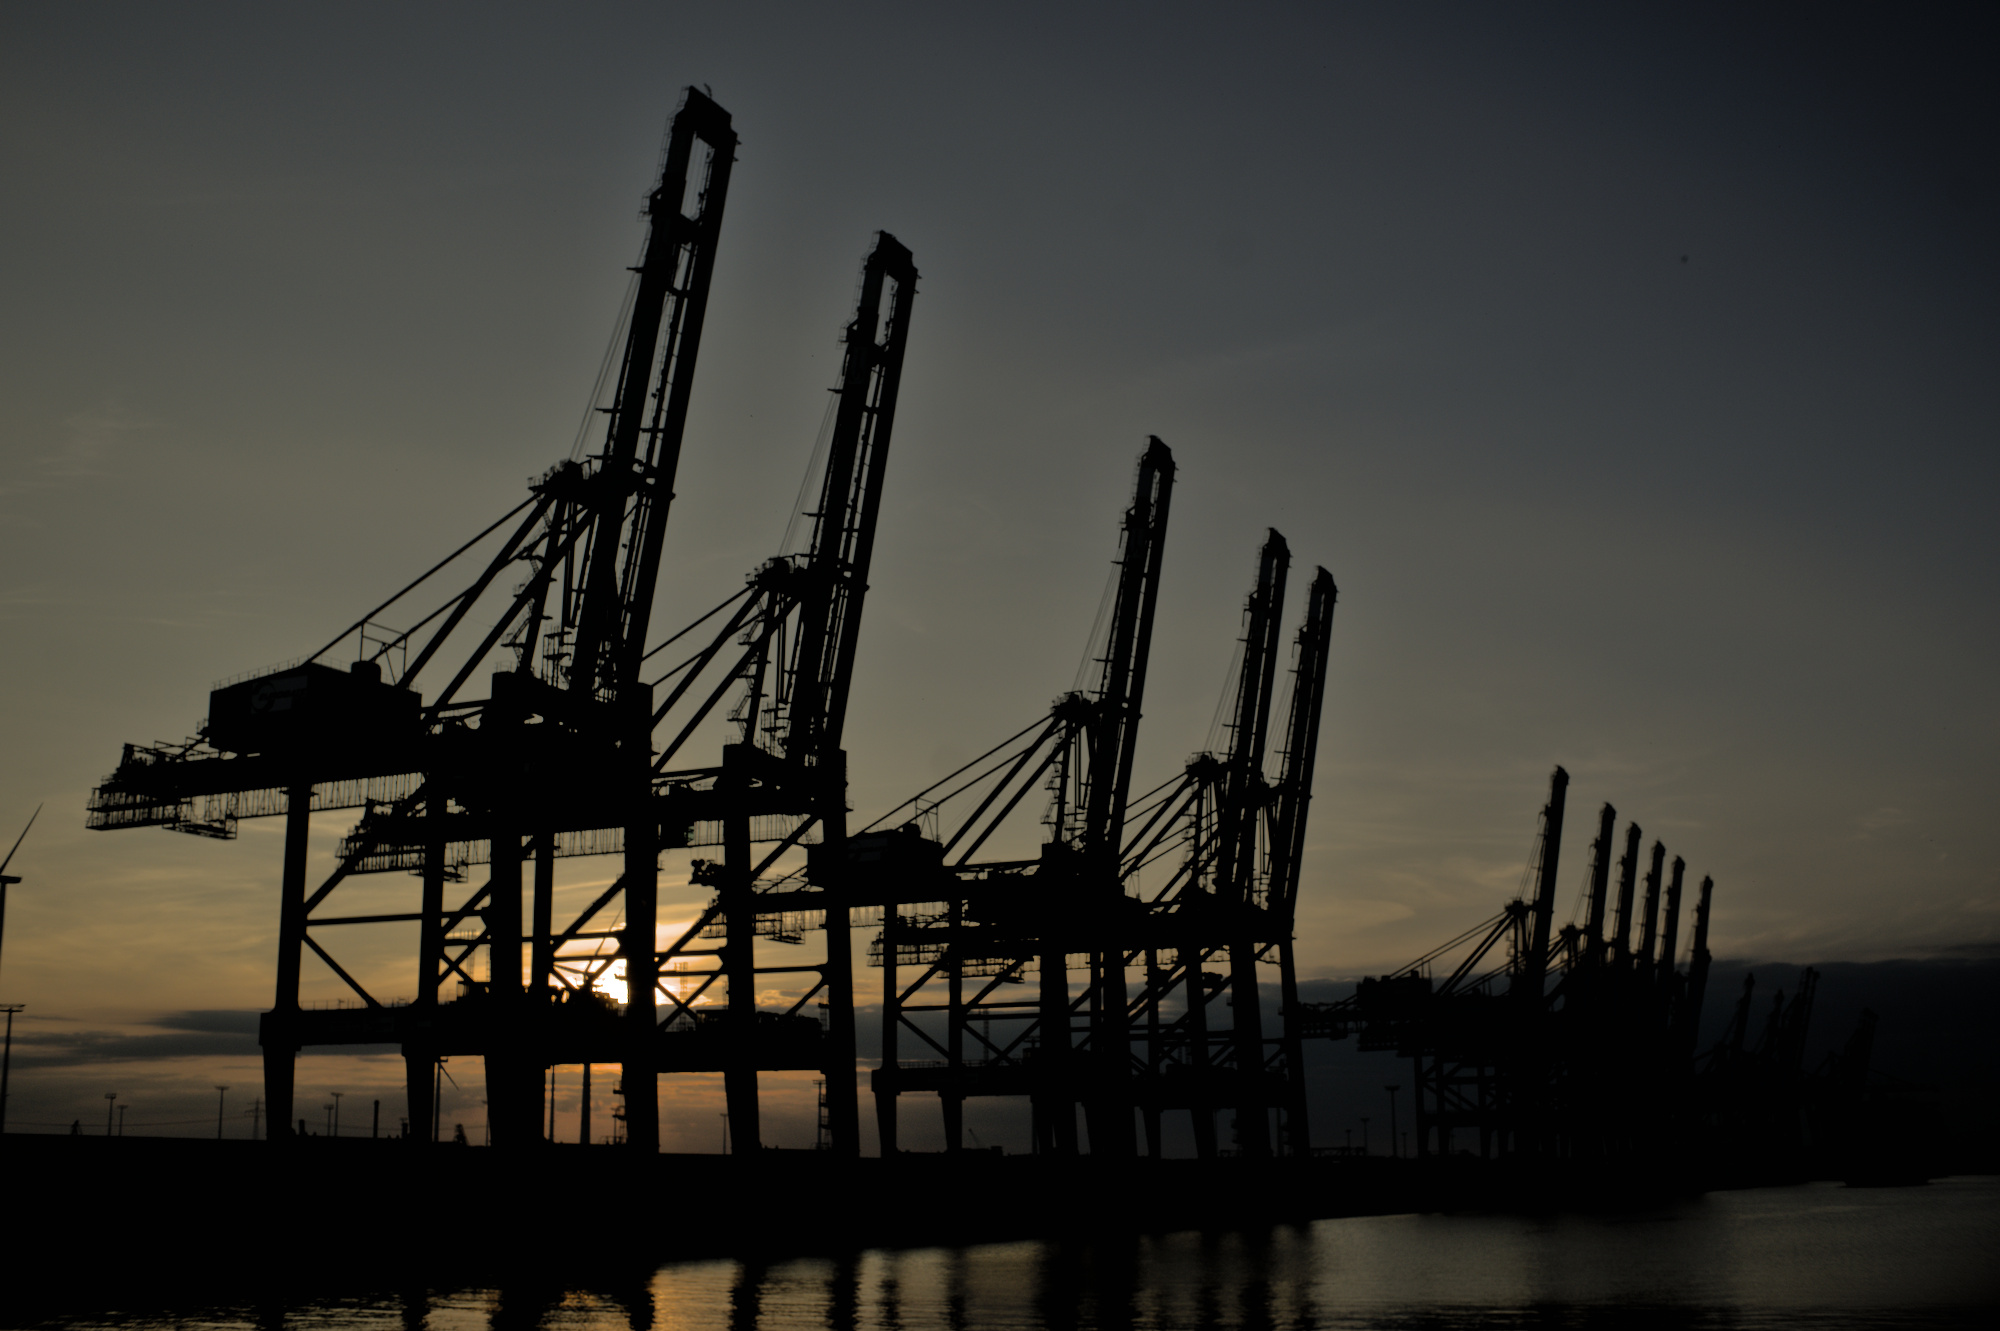 Kräne im Hamburger Hafen bei Sonnenuntergang